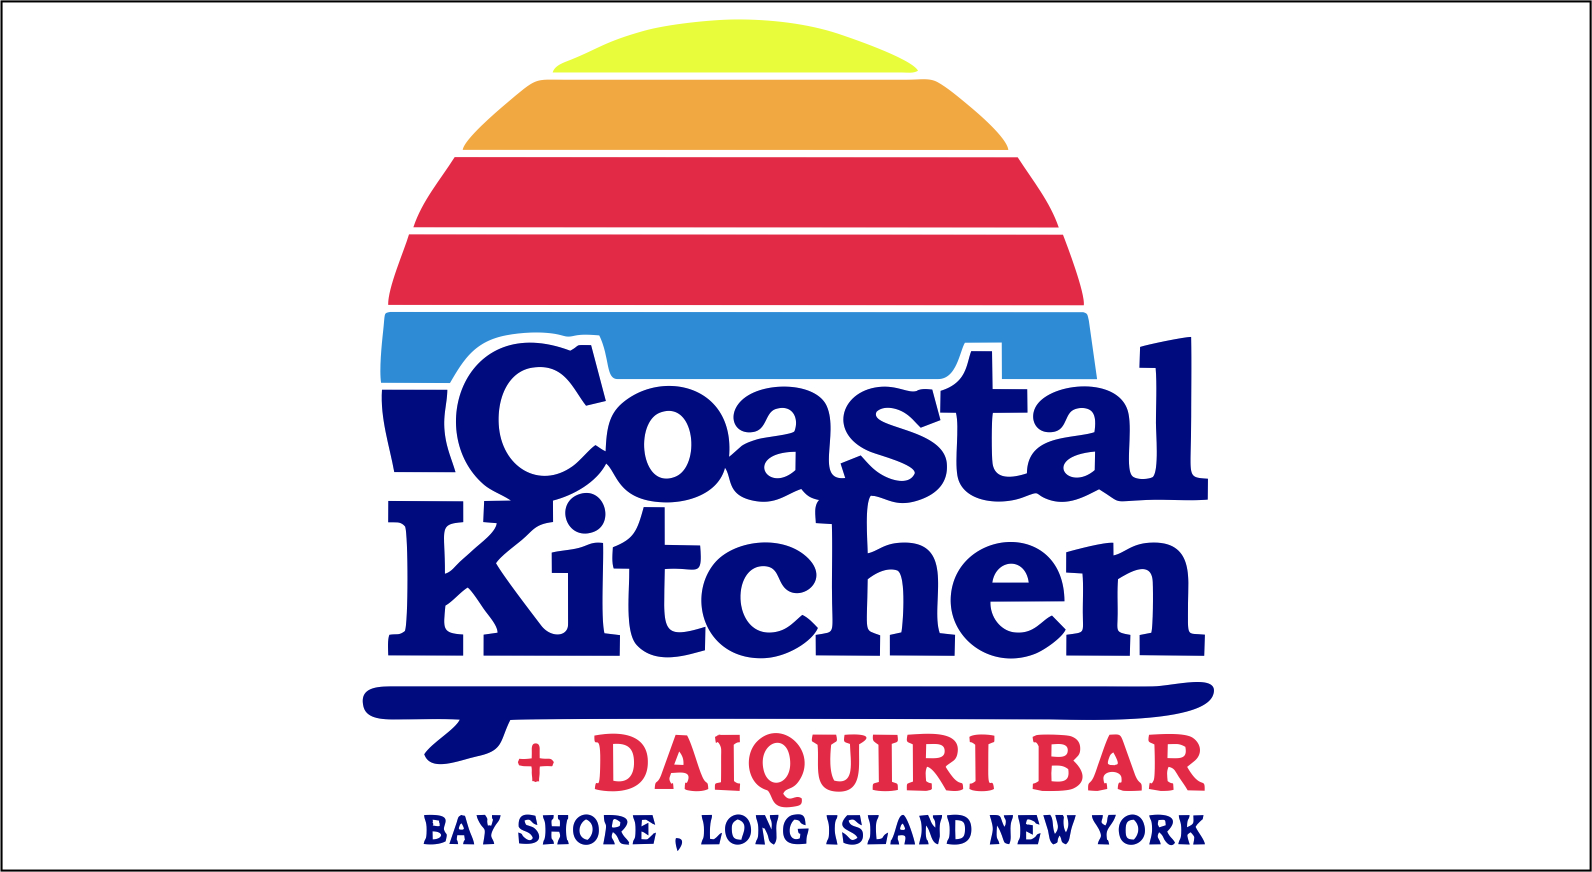 Coastal Kitchen